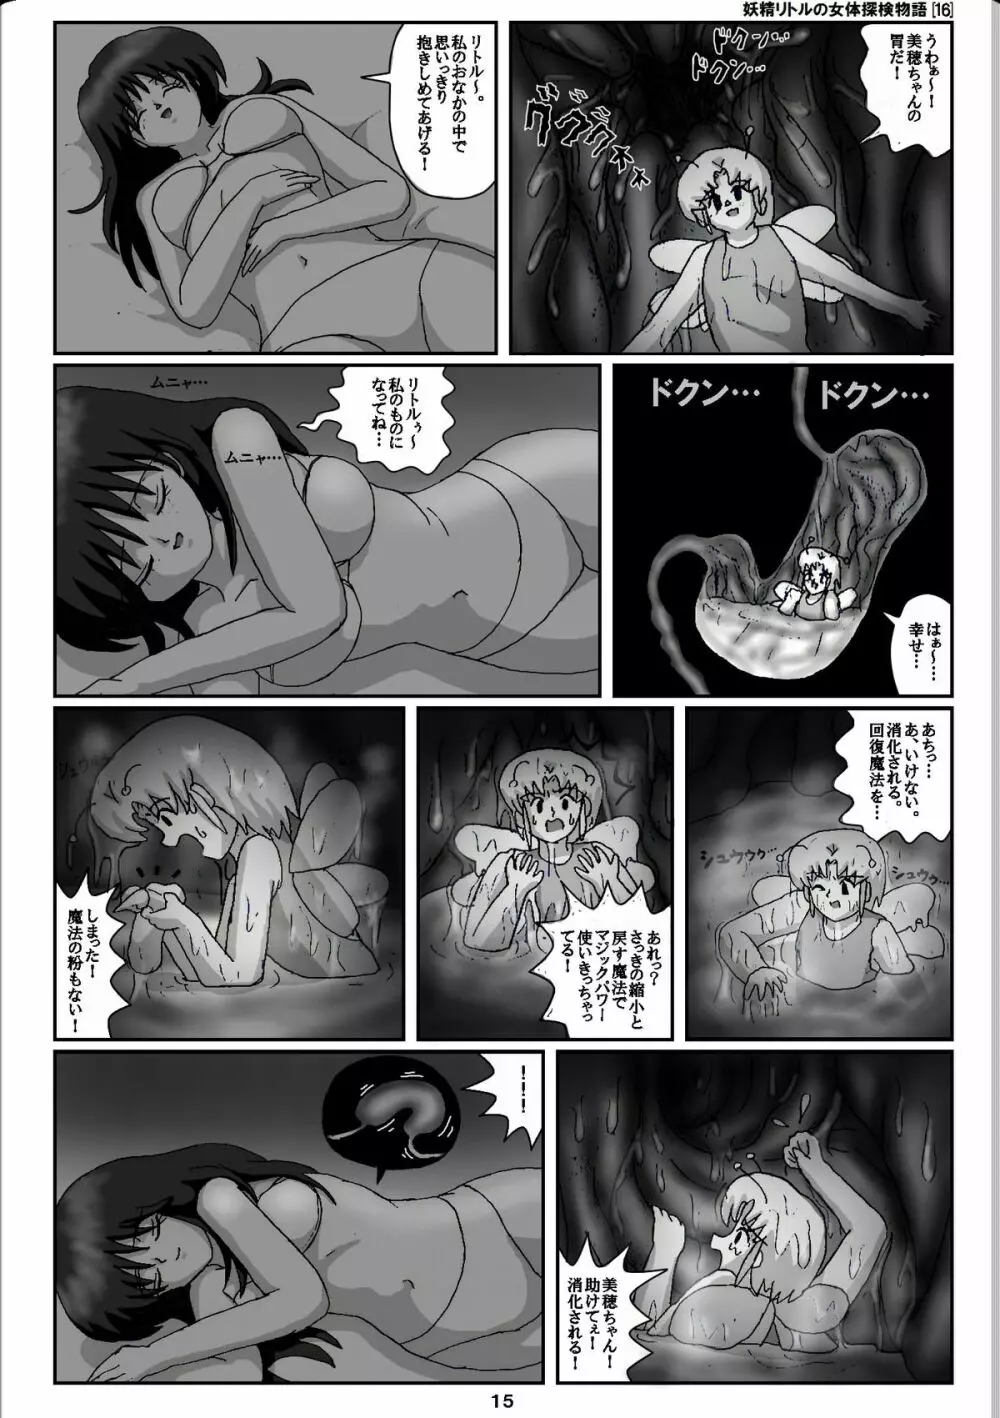 妖精リトルの女体探検物語 16 15ページ